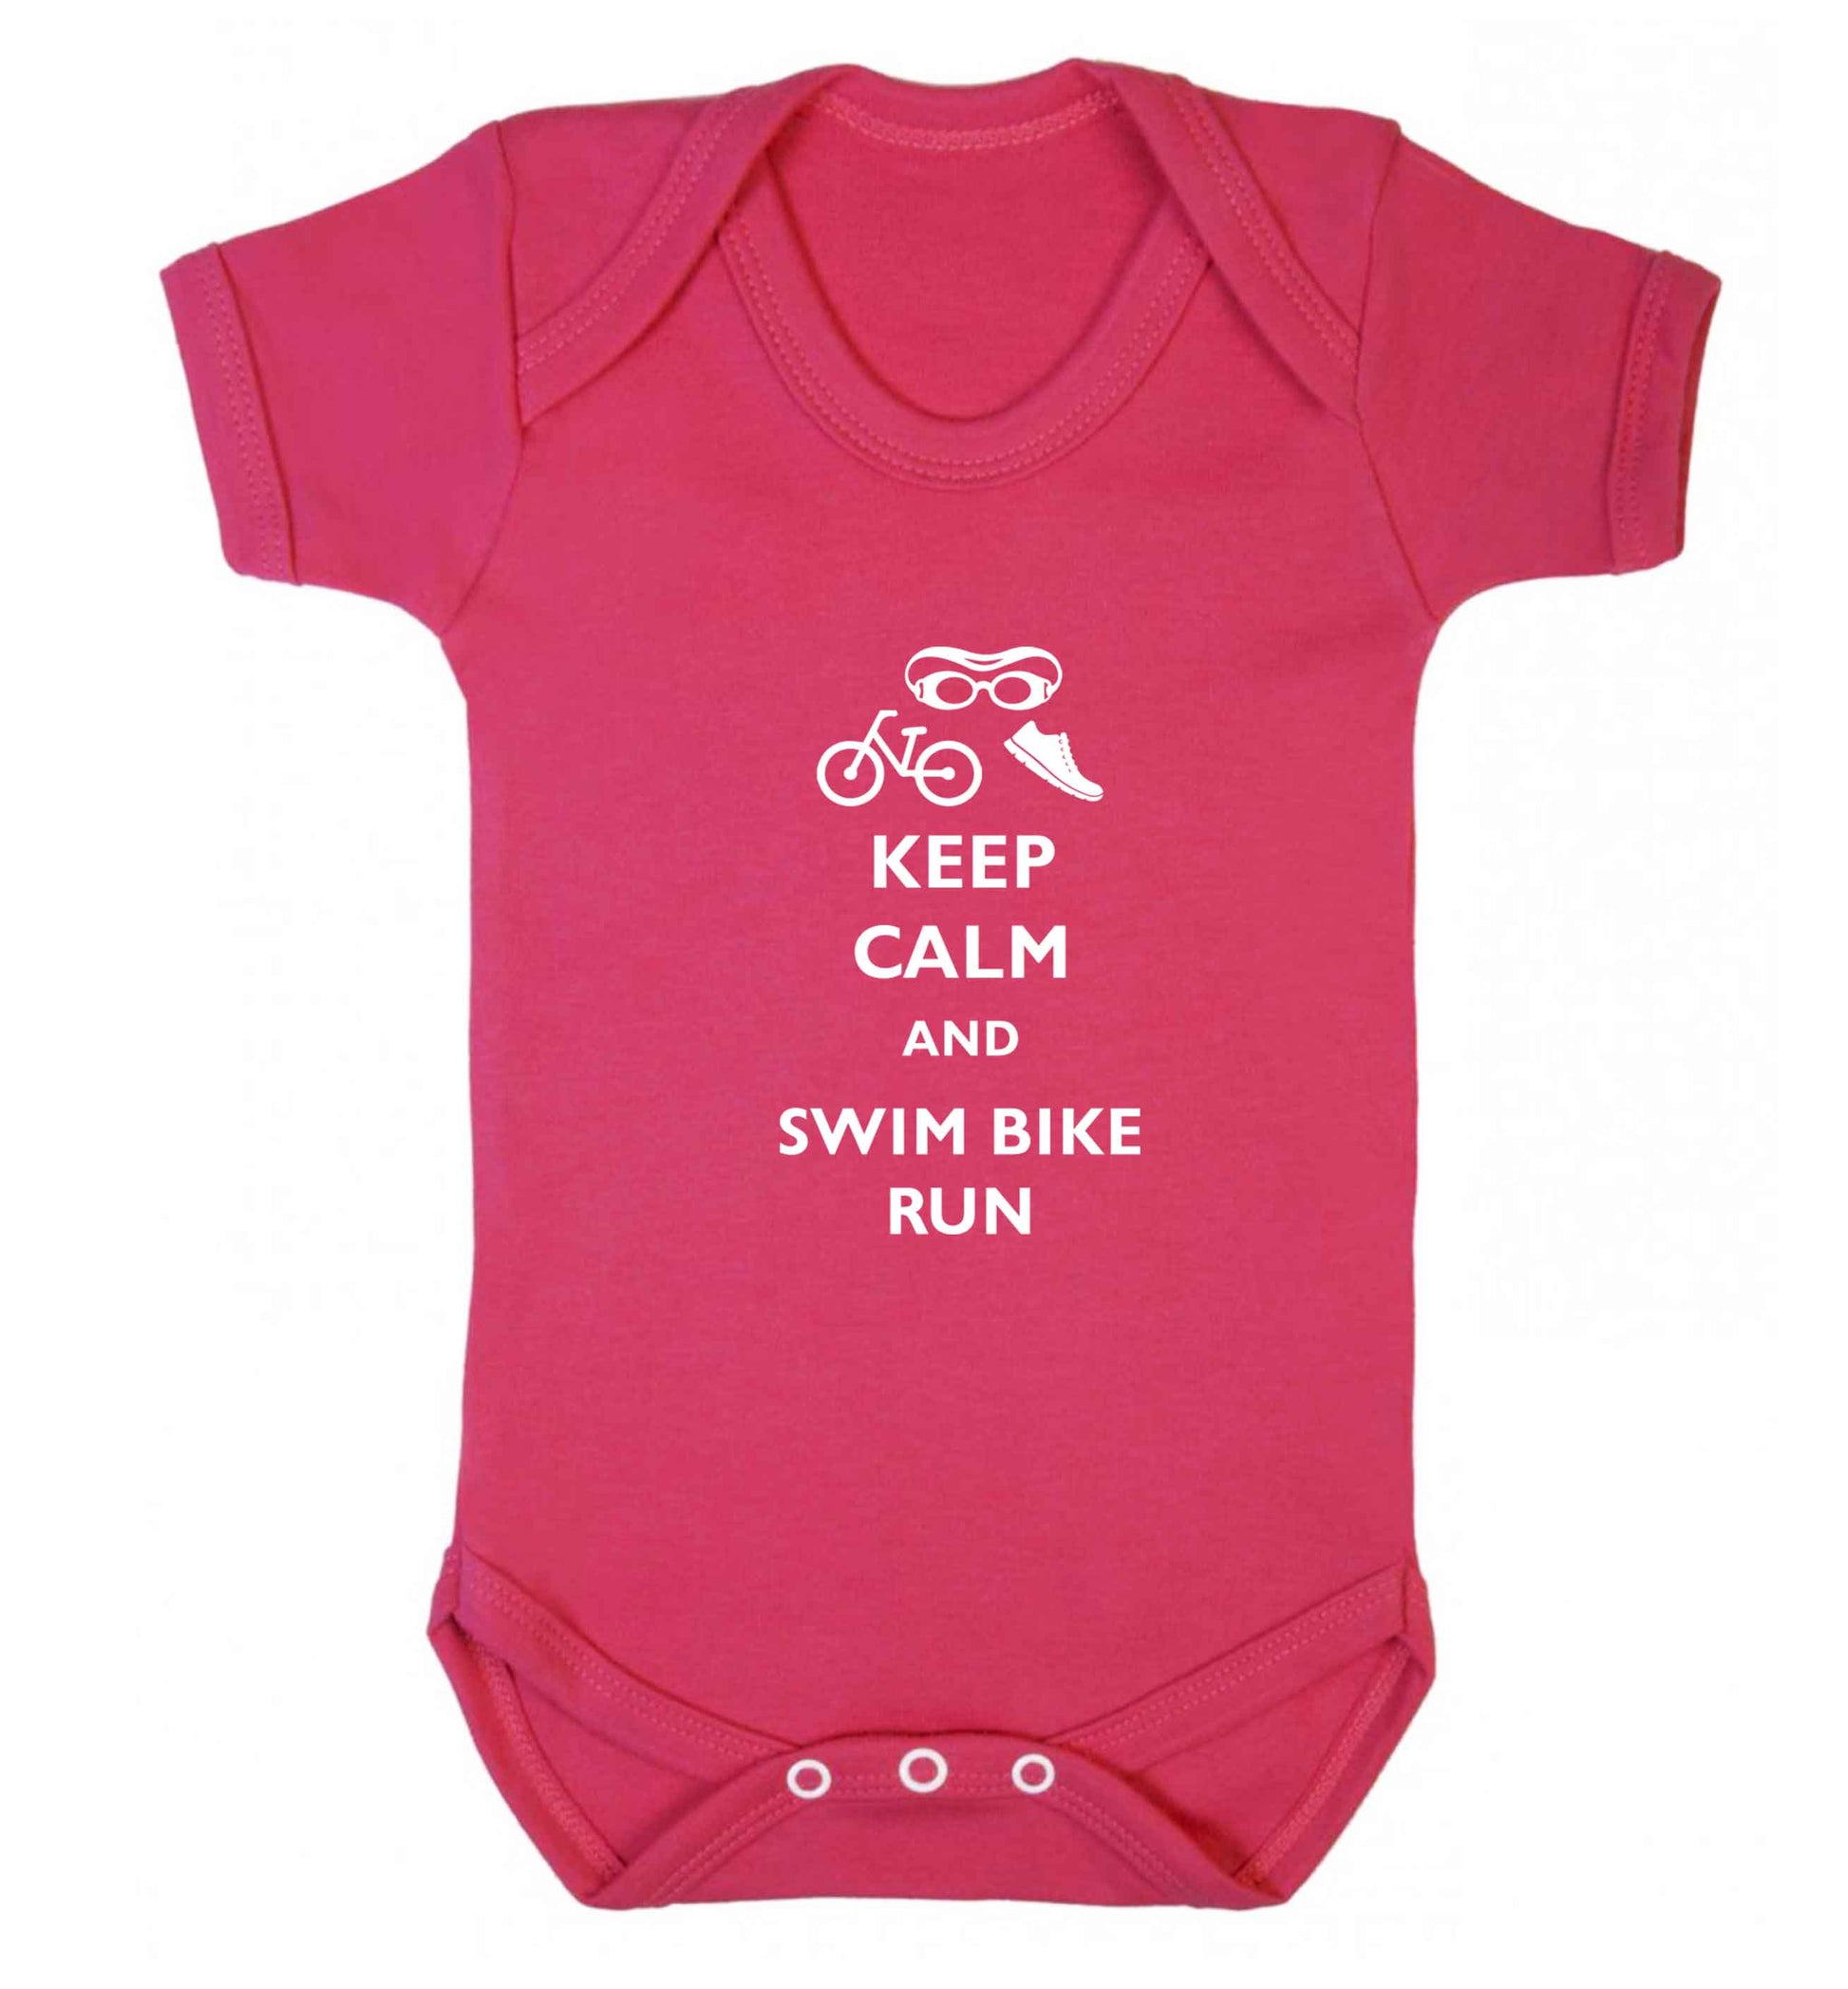 Keep calm and swim bike run baby vest dark pink 18-24 months